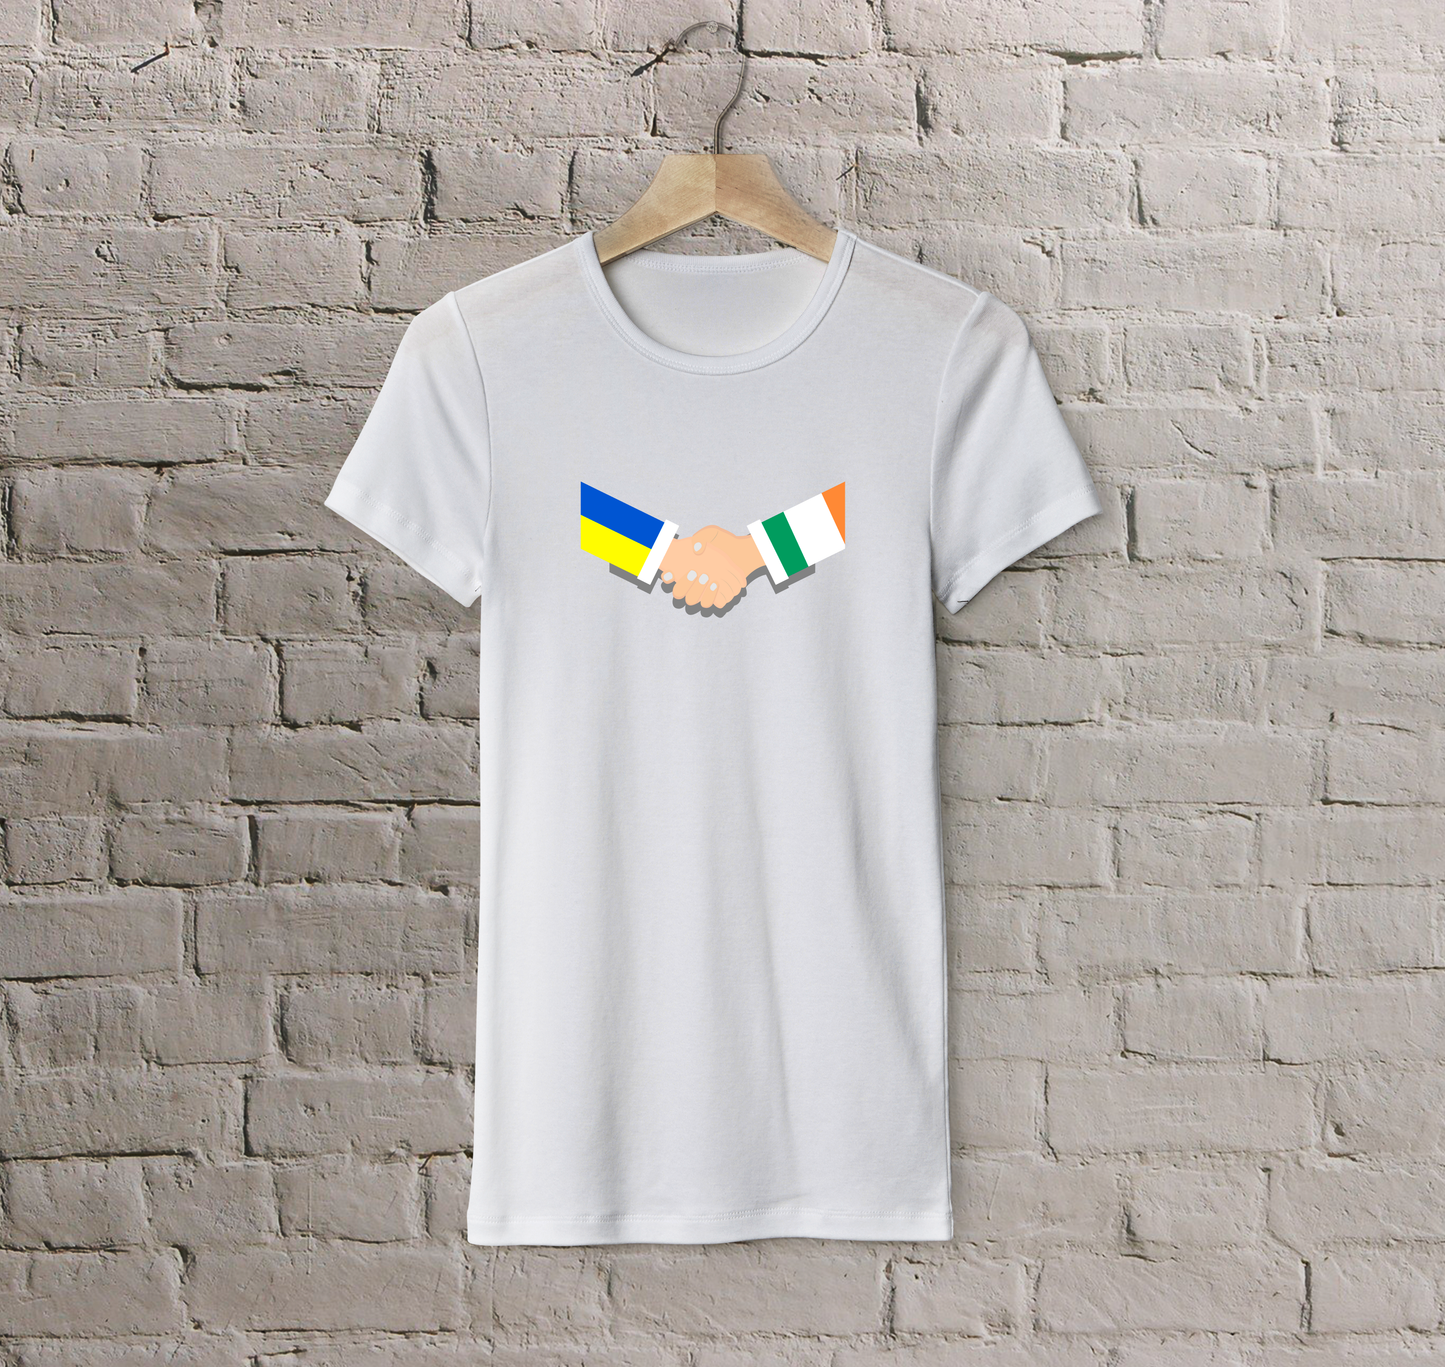 T-shirt Ireland + Ukraine (handshake)